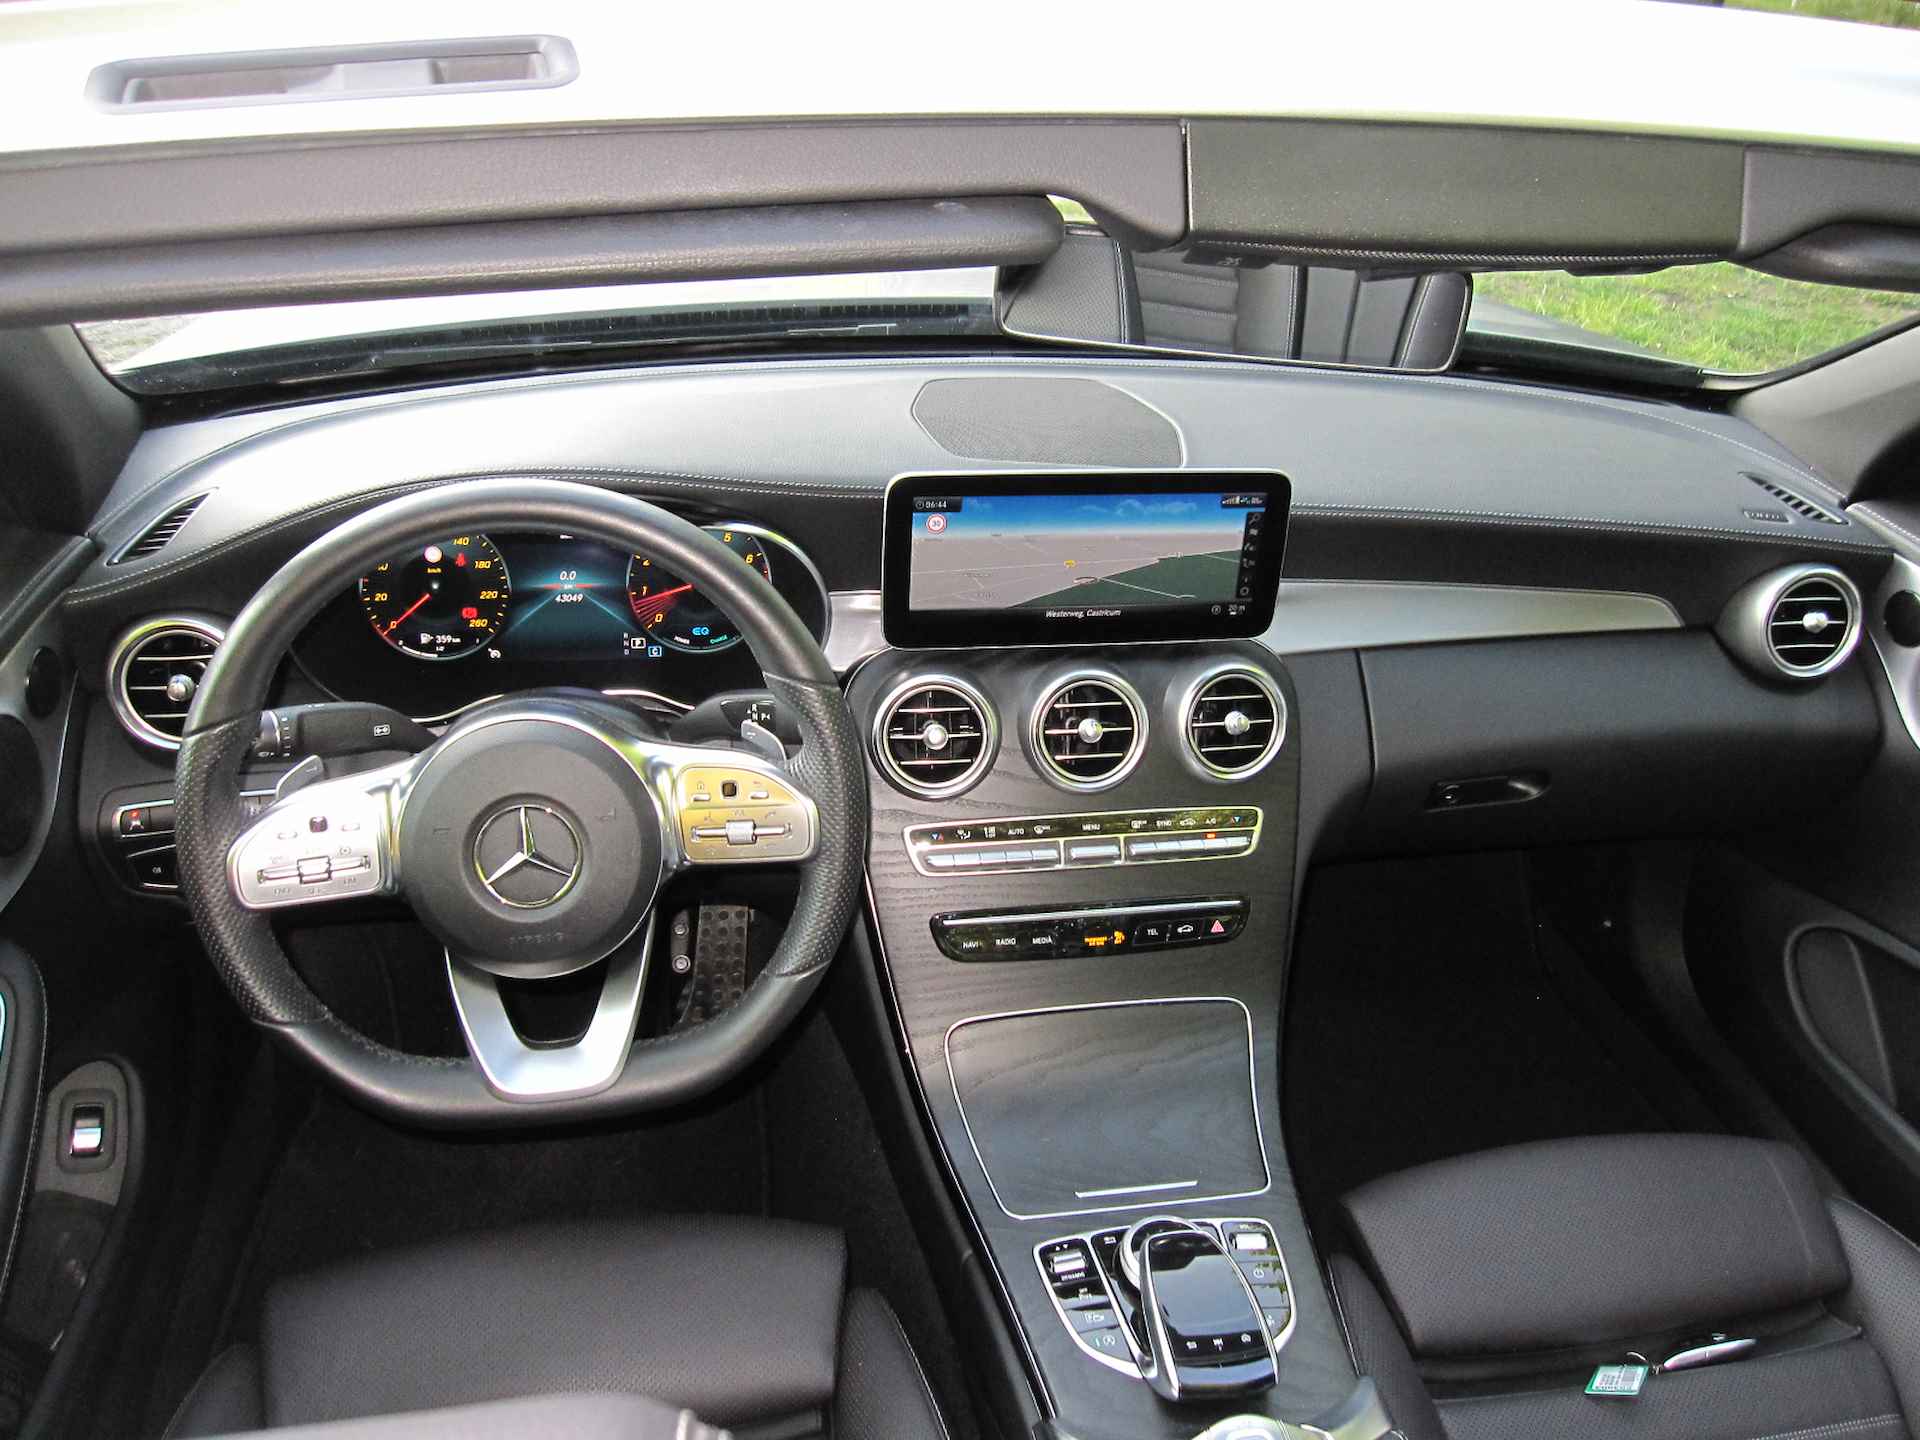 Mercedes-Benz C-Klasse Cabrio 200 4MATIC AMG-LINE AUTOMAAT 1E EIGENAAR!! COMAND NAVIGATIE, APPLE CARPLAY, NEKVERWARMING, LEER, STOELVERWARMING, STOELVENTILATIE, MEMORYSTOELEN, 360 GRADEN CAMERA, PARKEERHULP VOOR/ACHTER, WINDSCHERM, MULTIBEAM LED, 18"AMG-VELGEN, ENZ. ENZ. FULL OPTIONS!! - 34/188